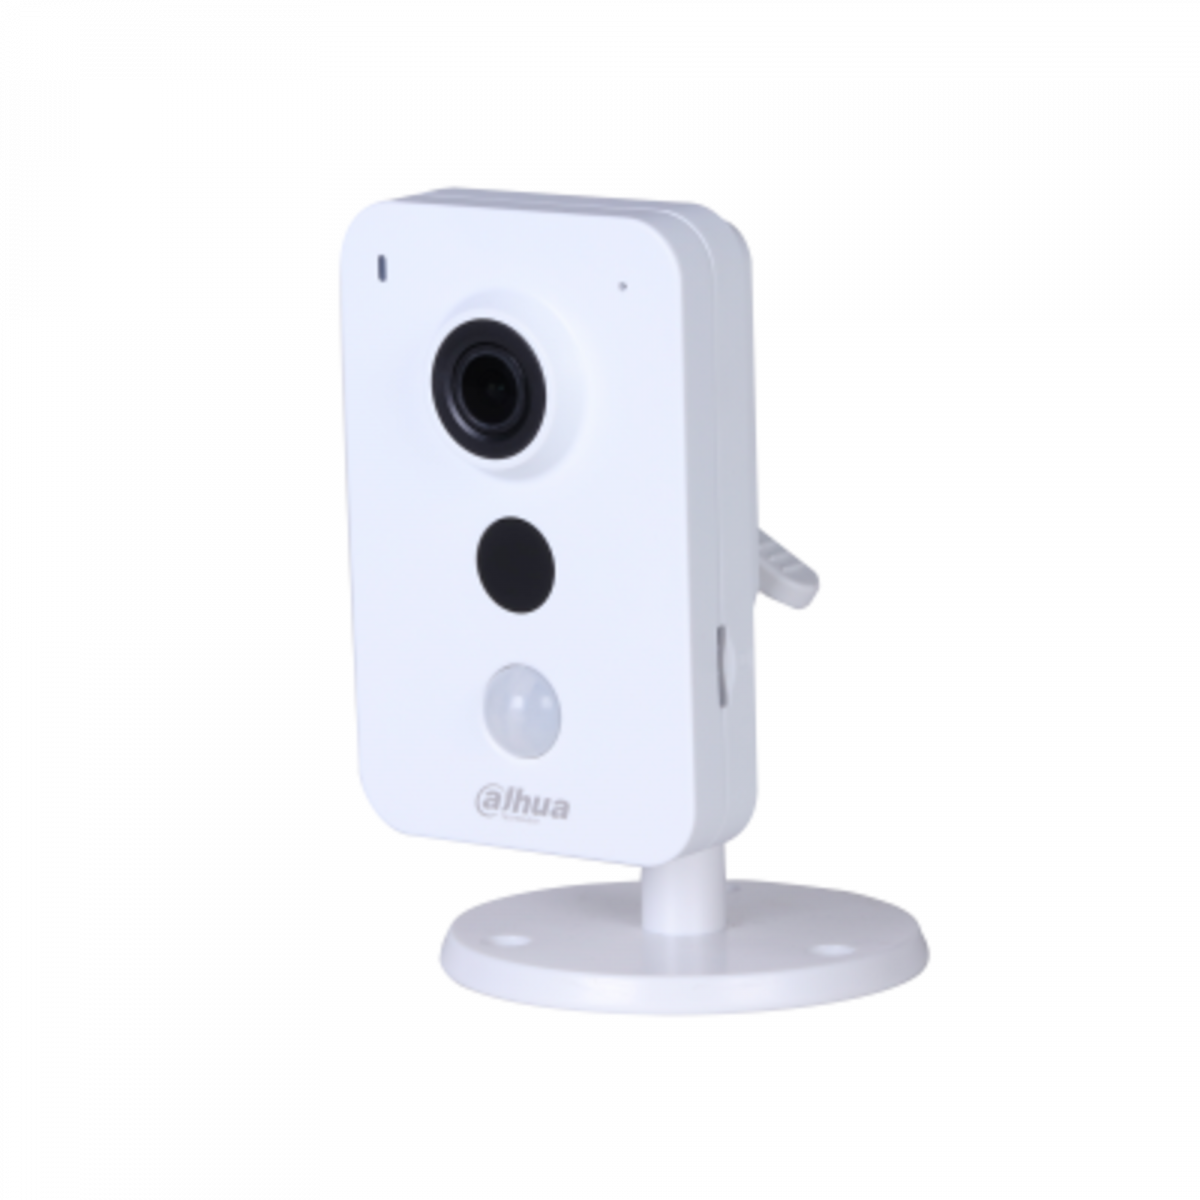 Wi-Fi камера Dahua DH-IPC-K15P миникуб 1.3Мп, объектив 2.8мм, 12В, microSD, встр.микрофон/динамик, DWDR, ИК до 10м